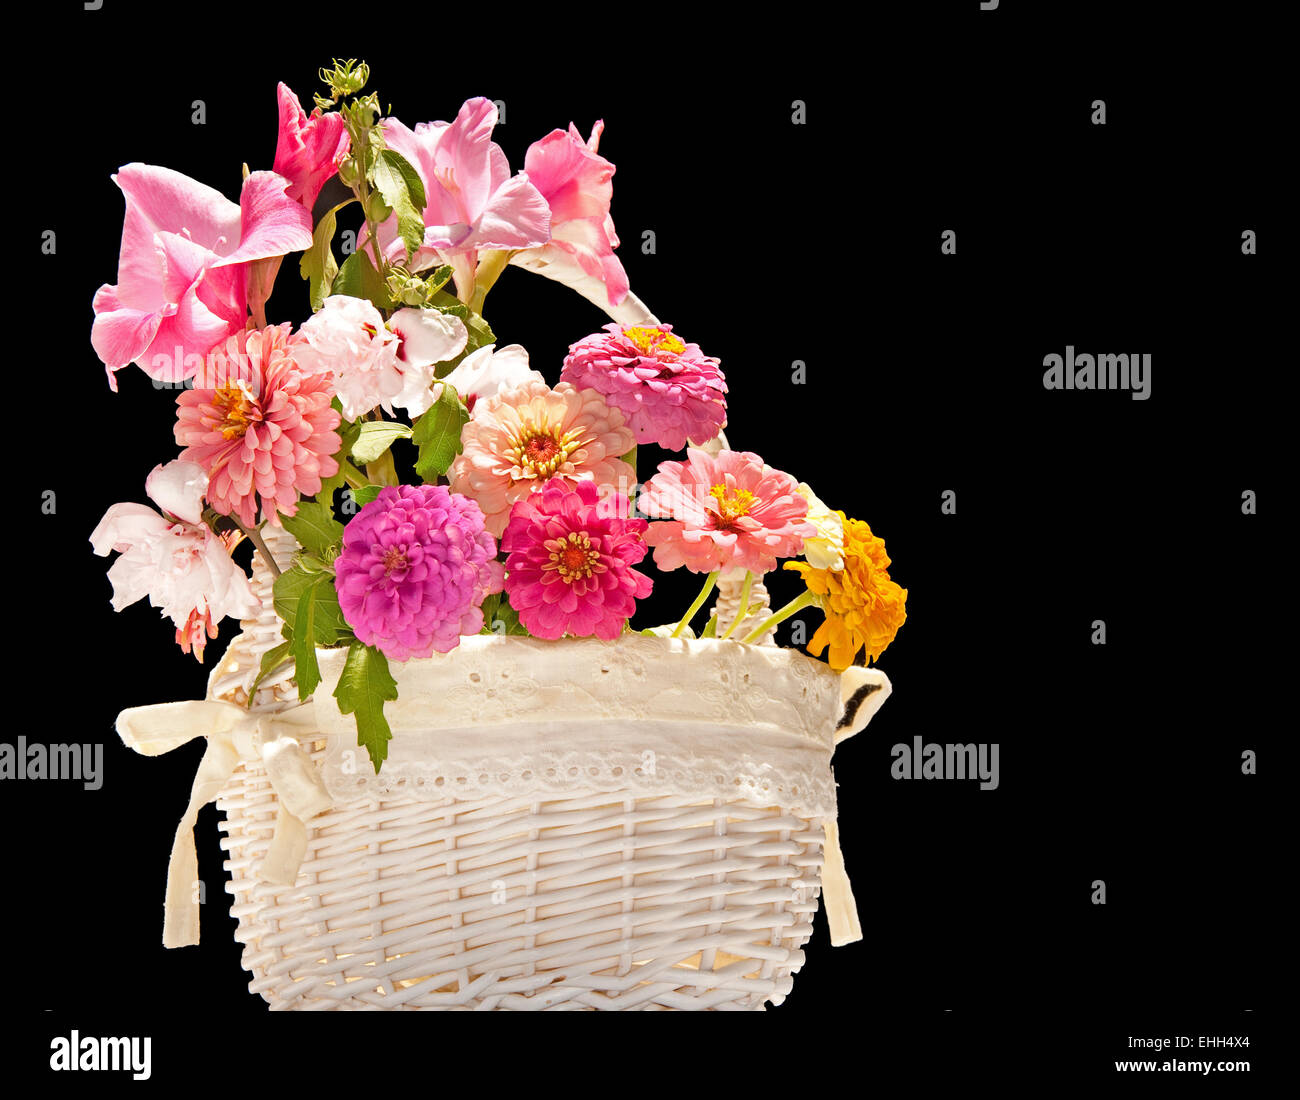 Flower basket against dark background Stock Photo